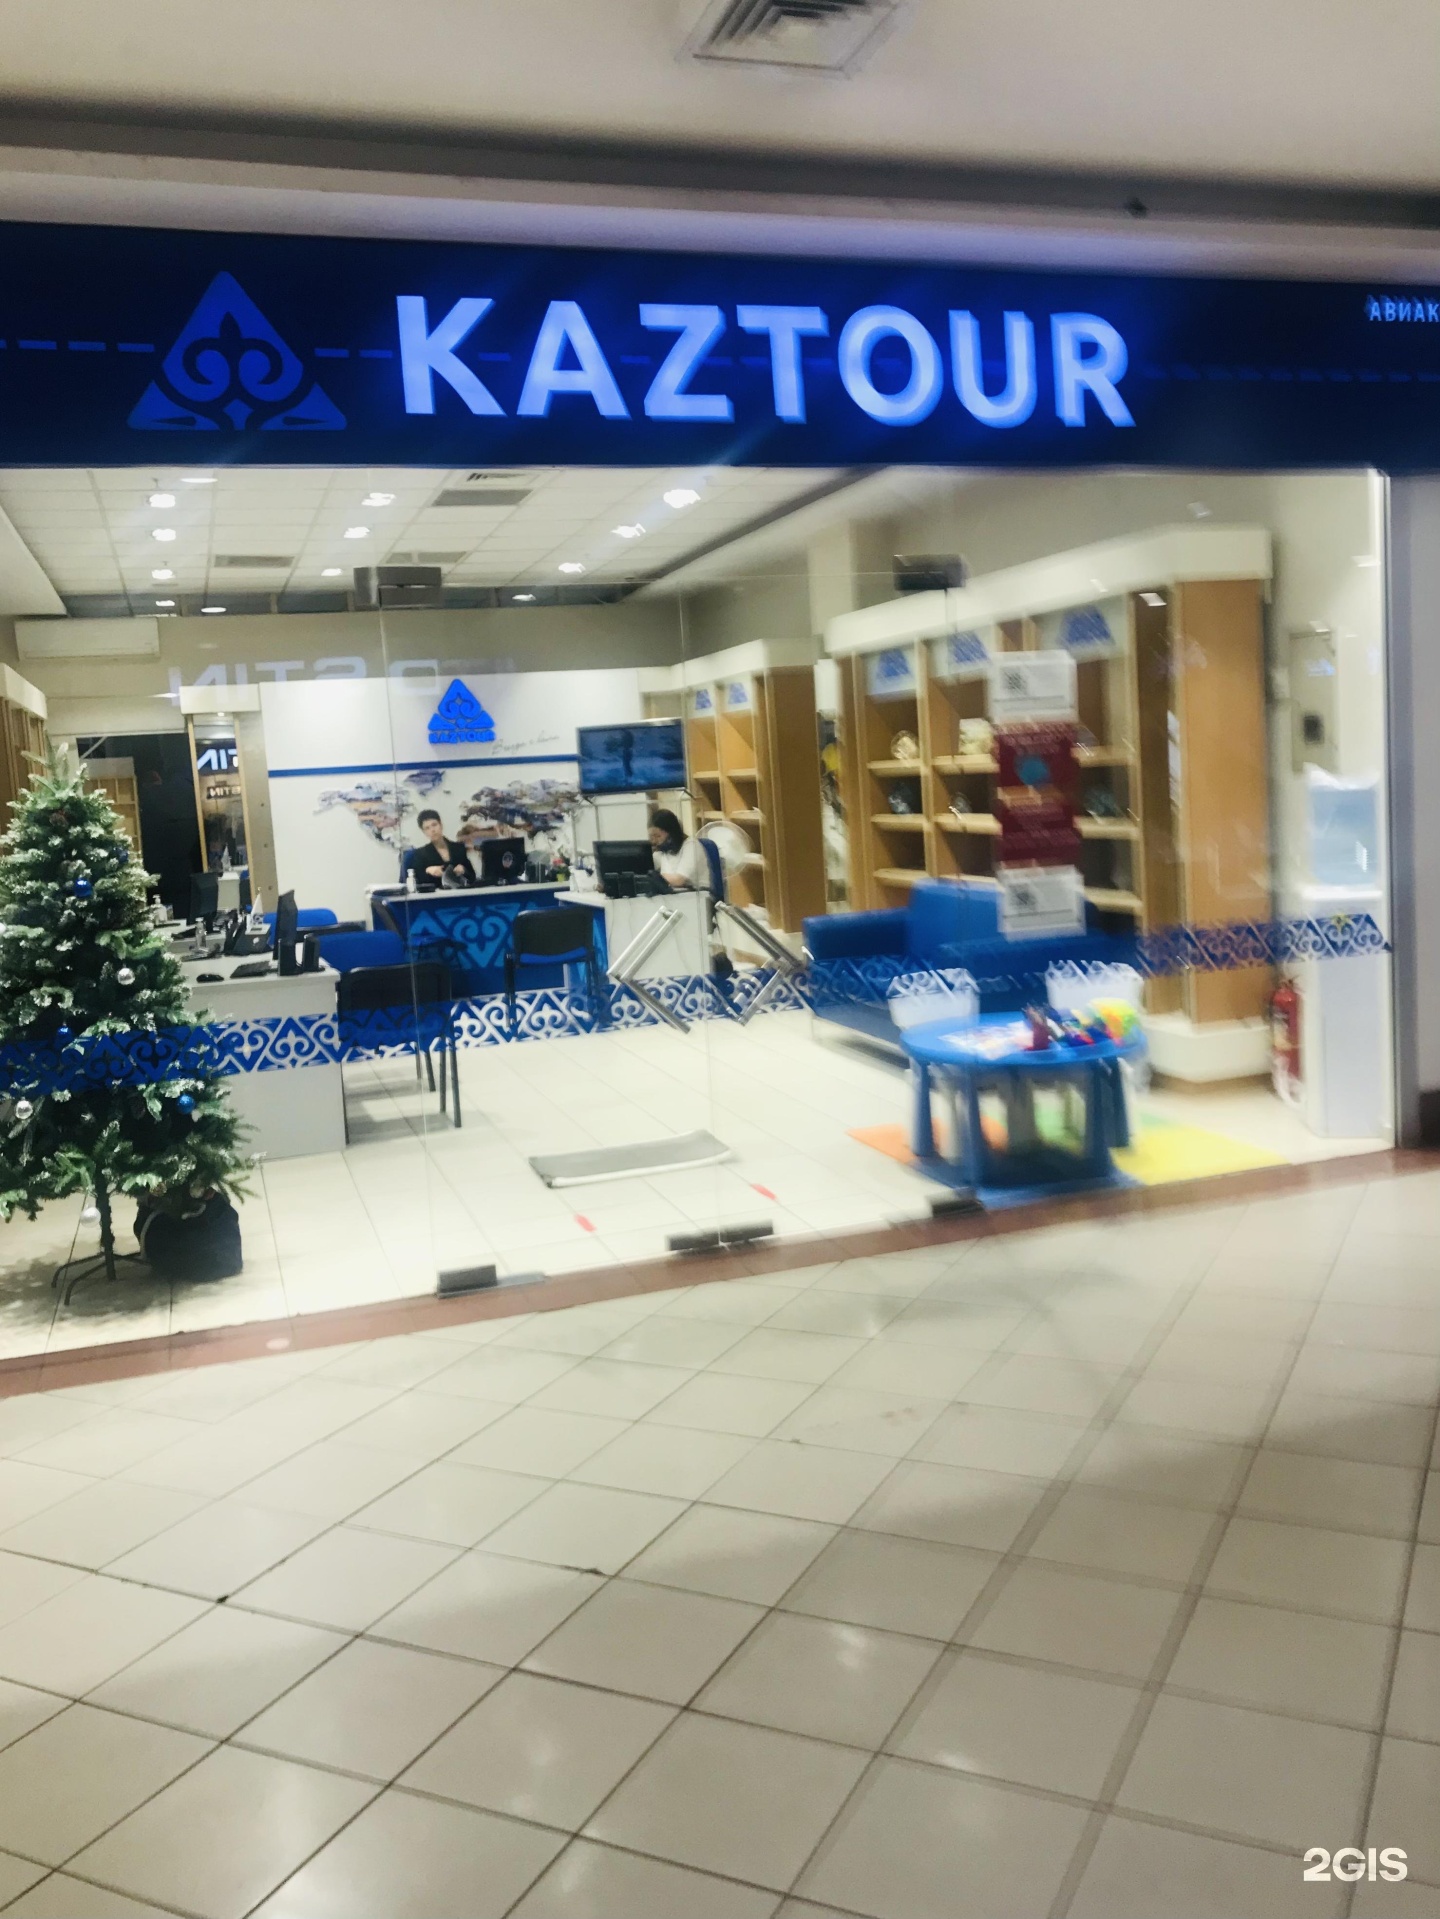 Kaztour